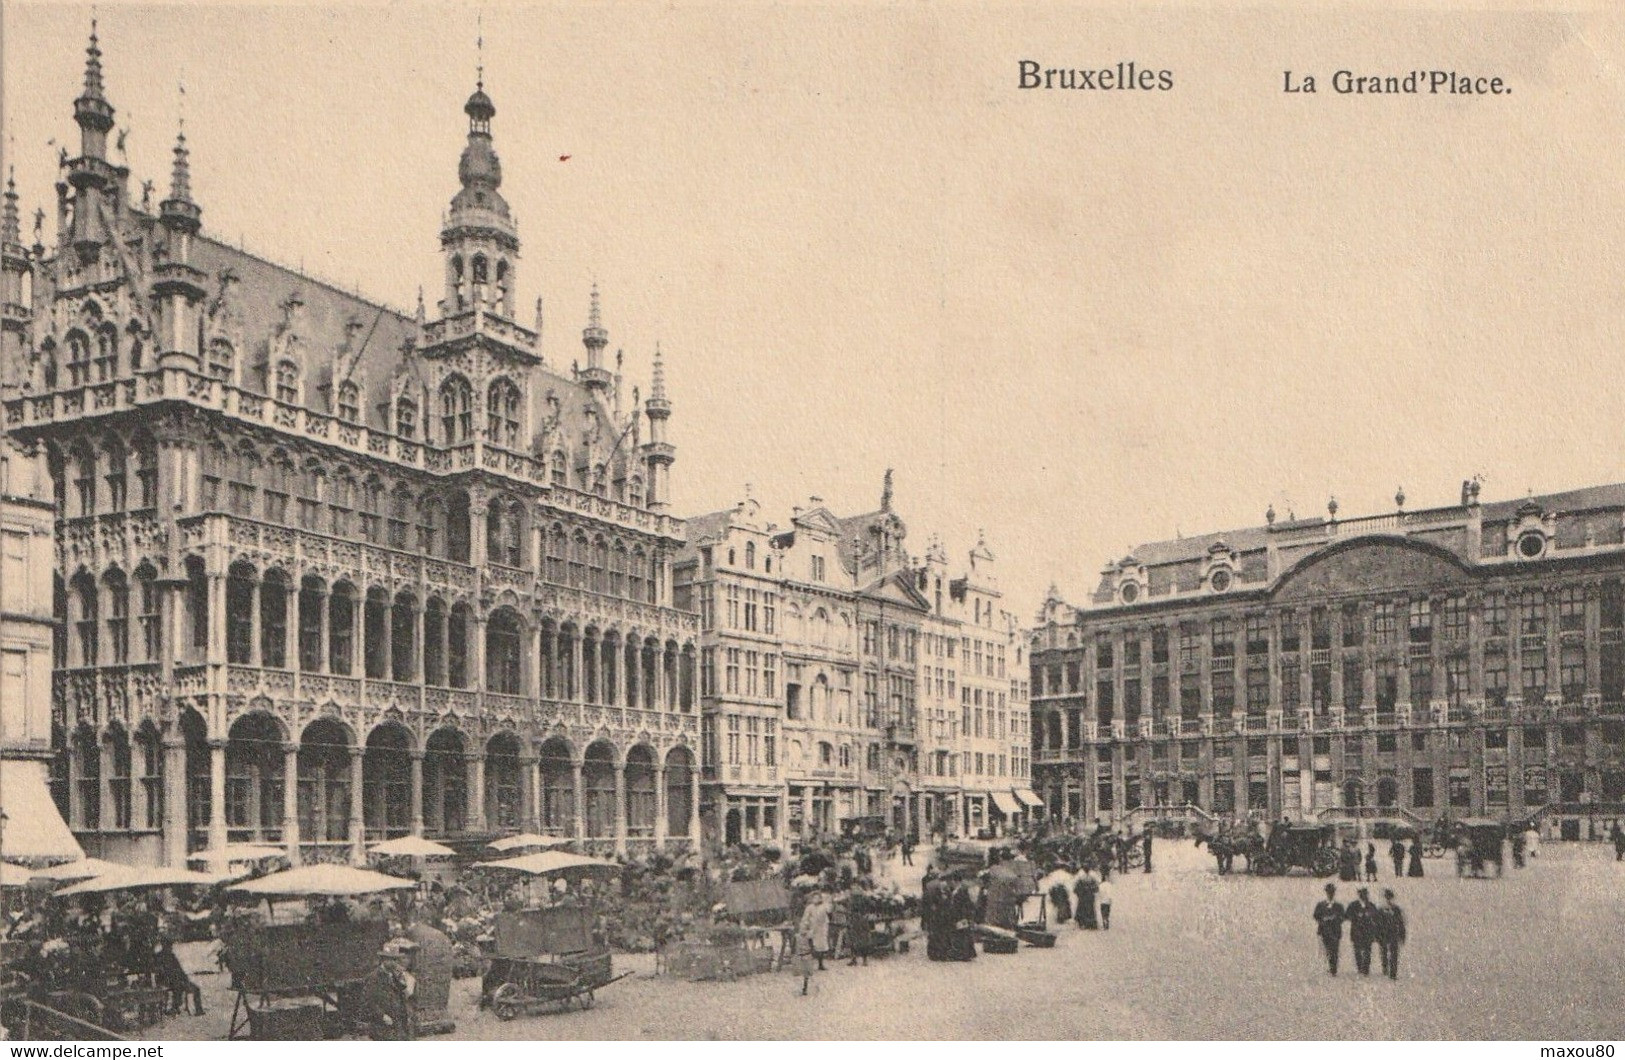 BRUXELLES  ( Super lot de 50 CPA originales )